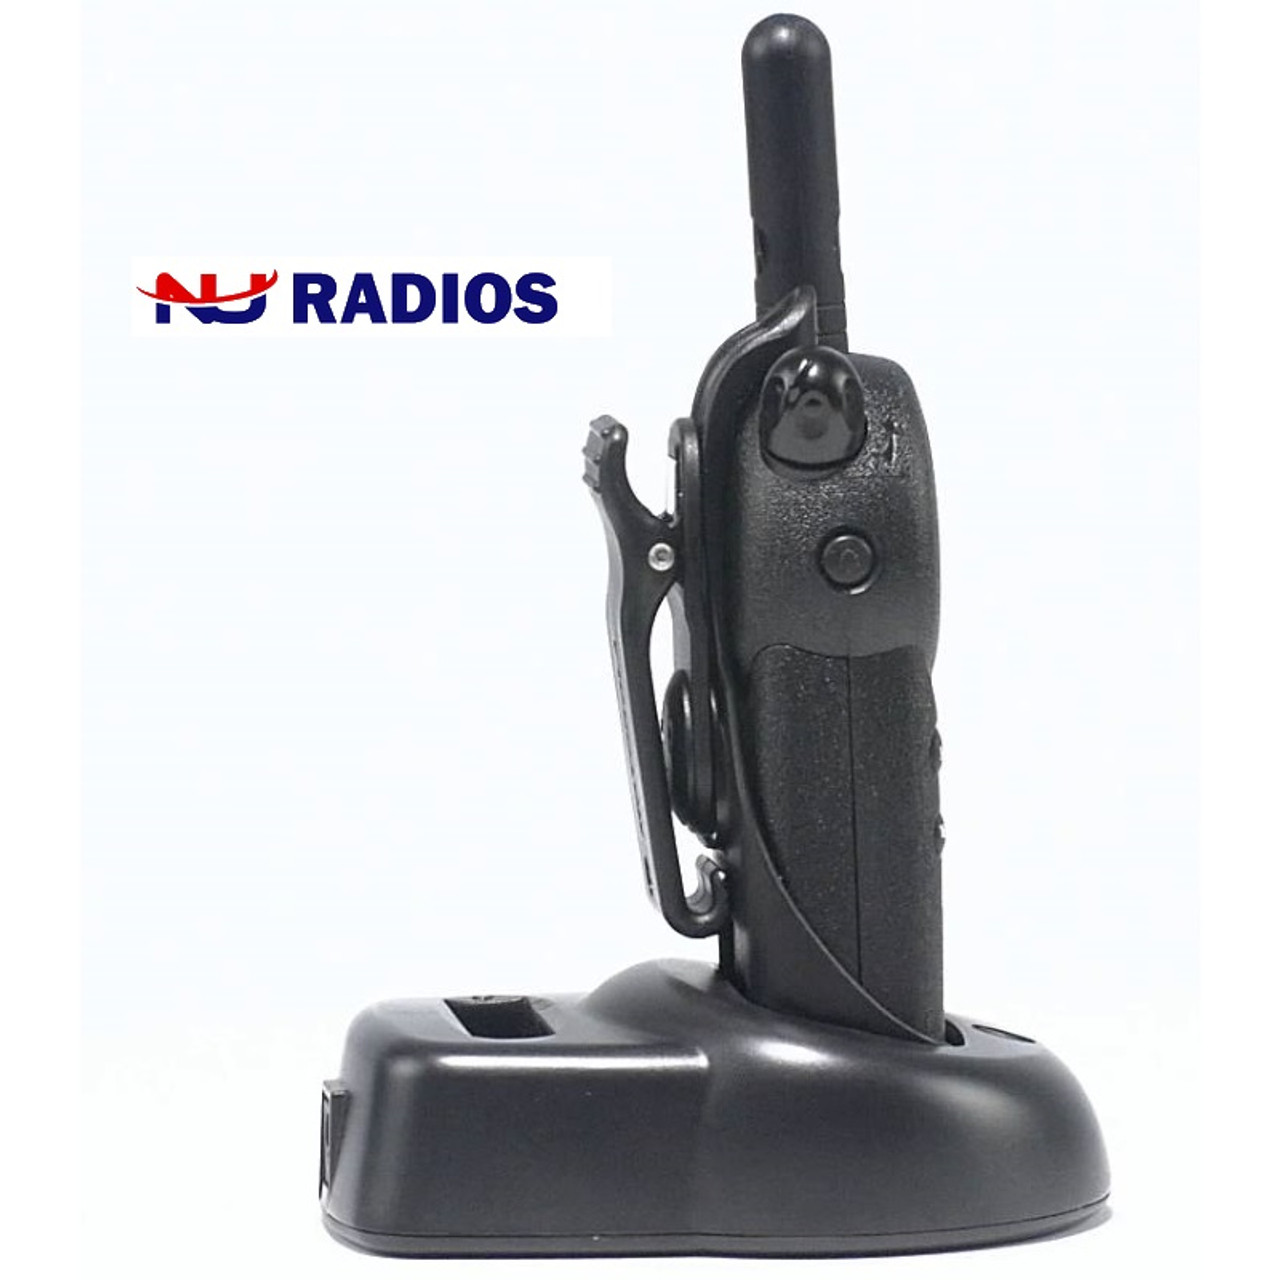 Pack of Motorola CLS1110 Two Way Radio Walkie Talkies (UHF) - 4